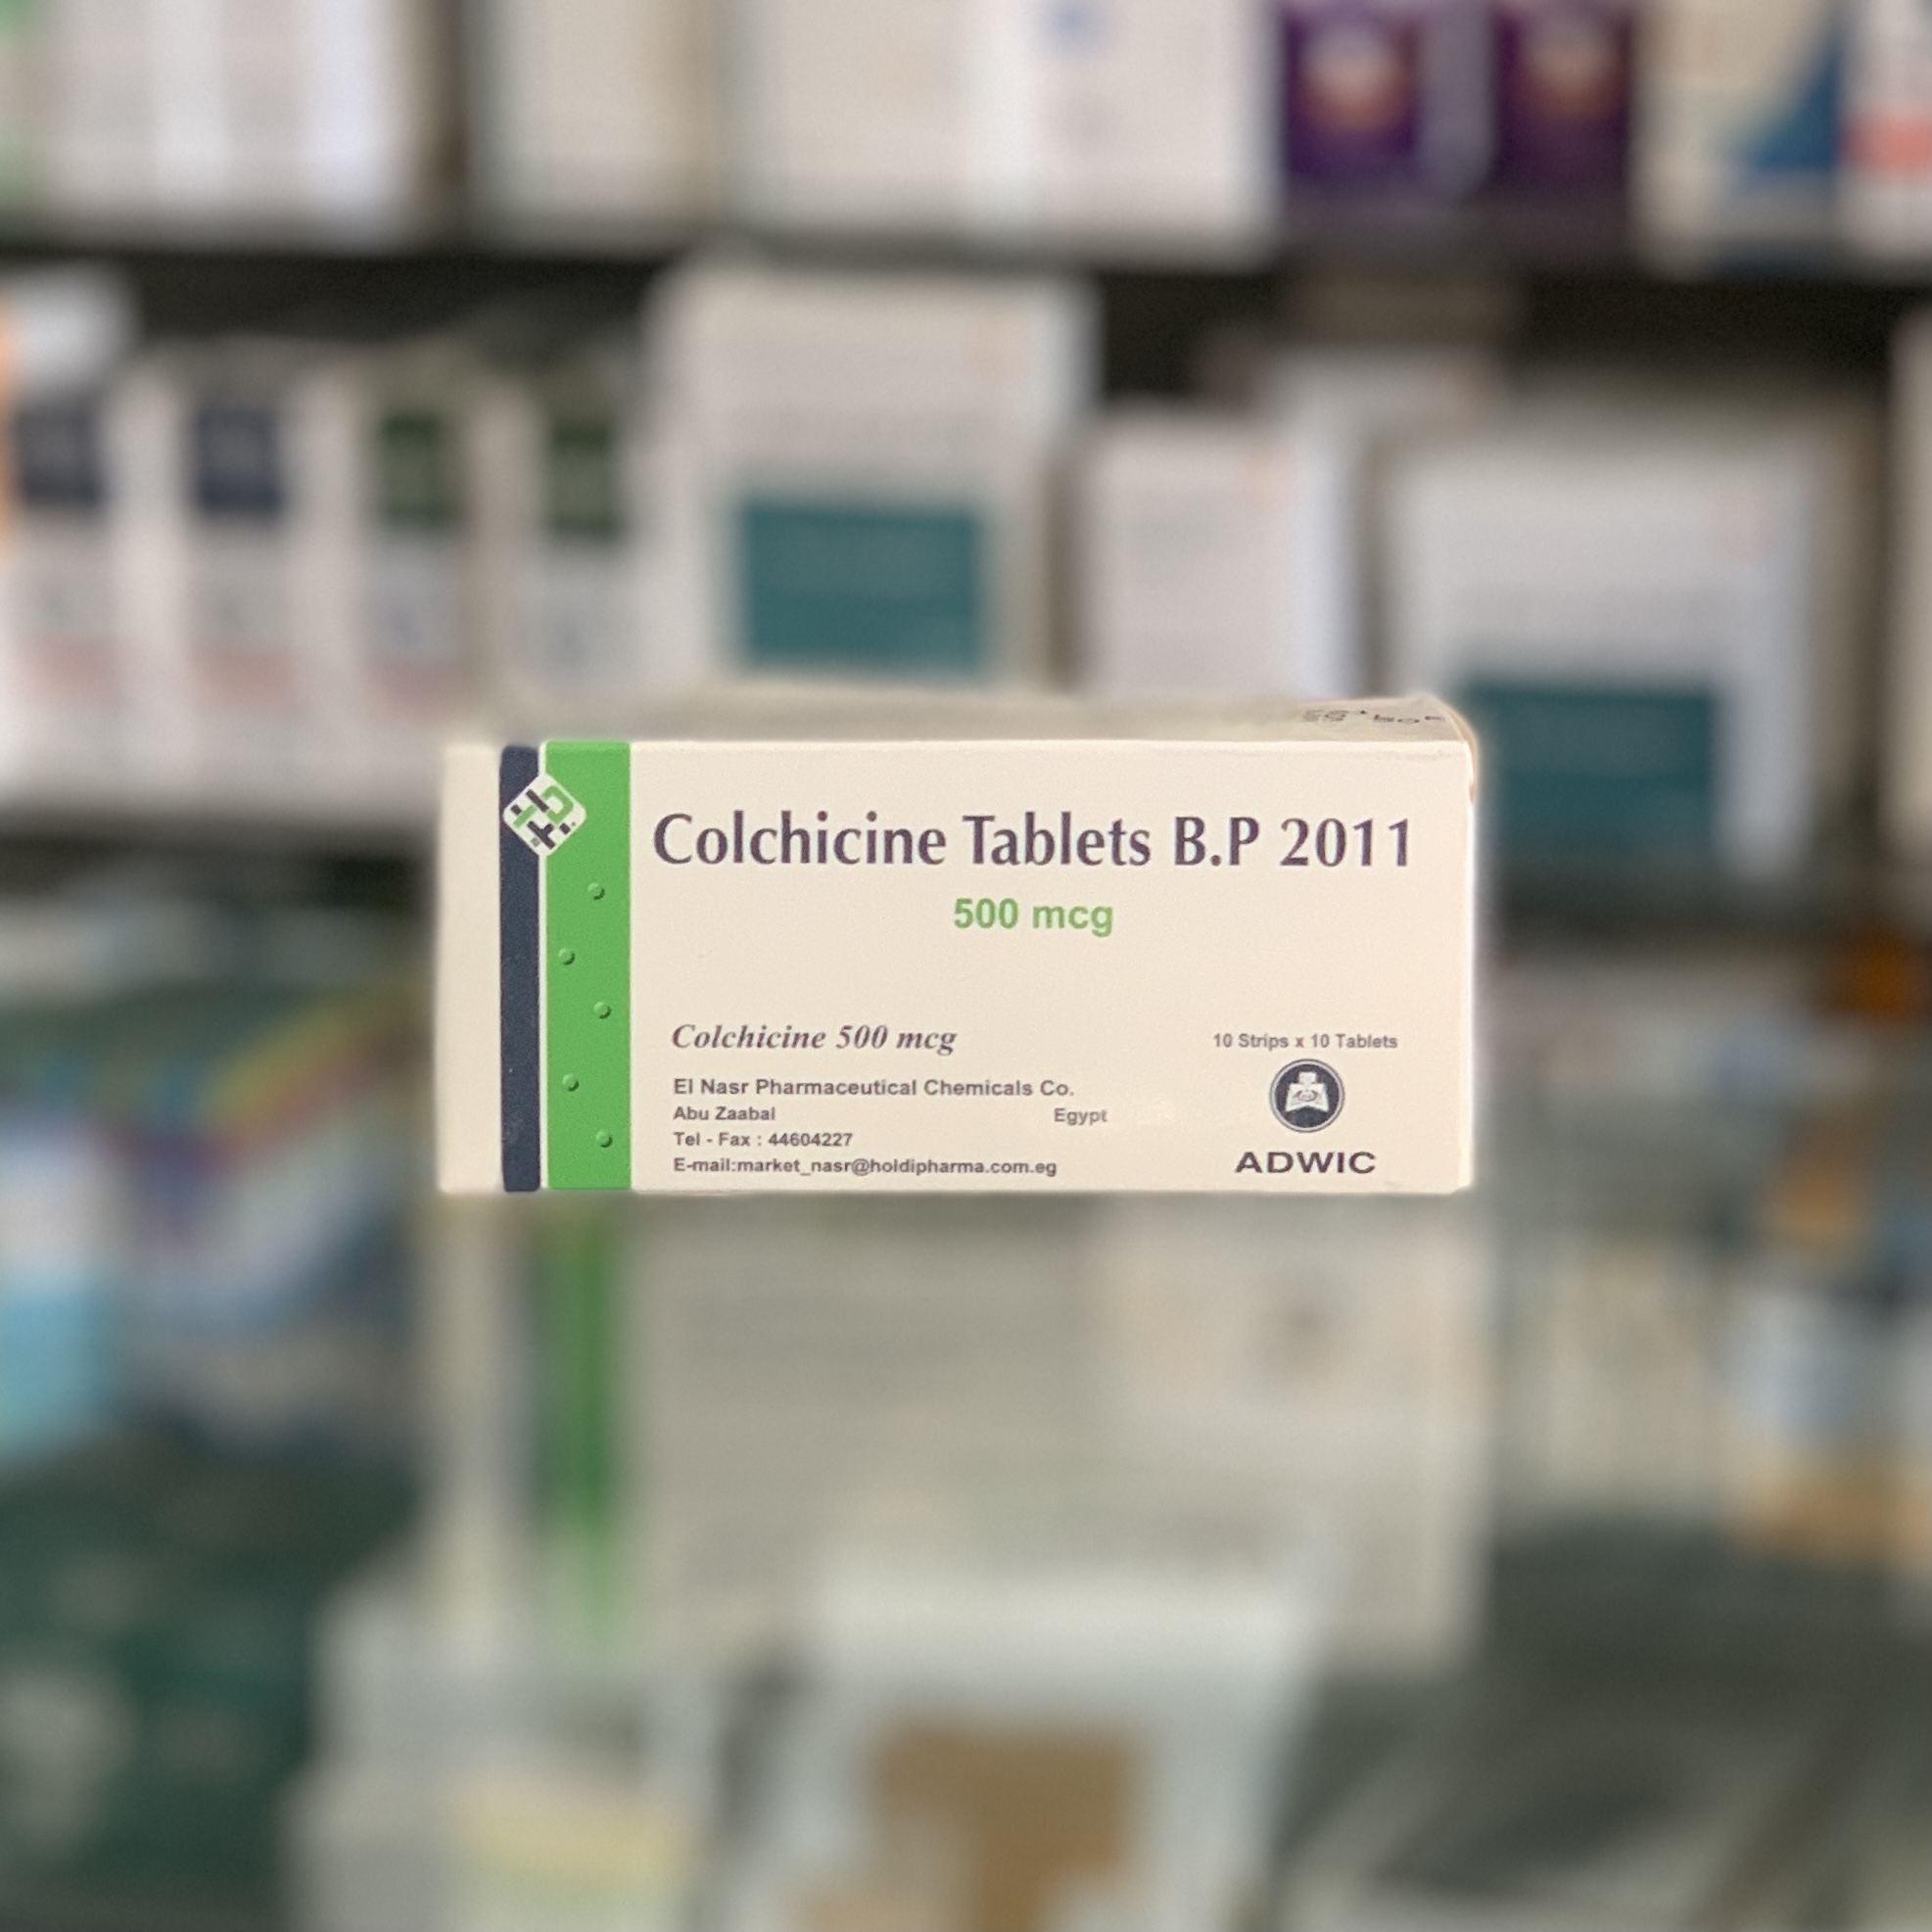 Колхицин 500 мкг 100 таблеток - Русская аптека в Египте